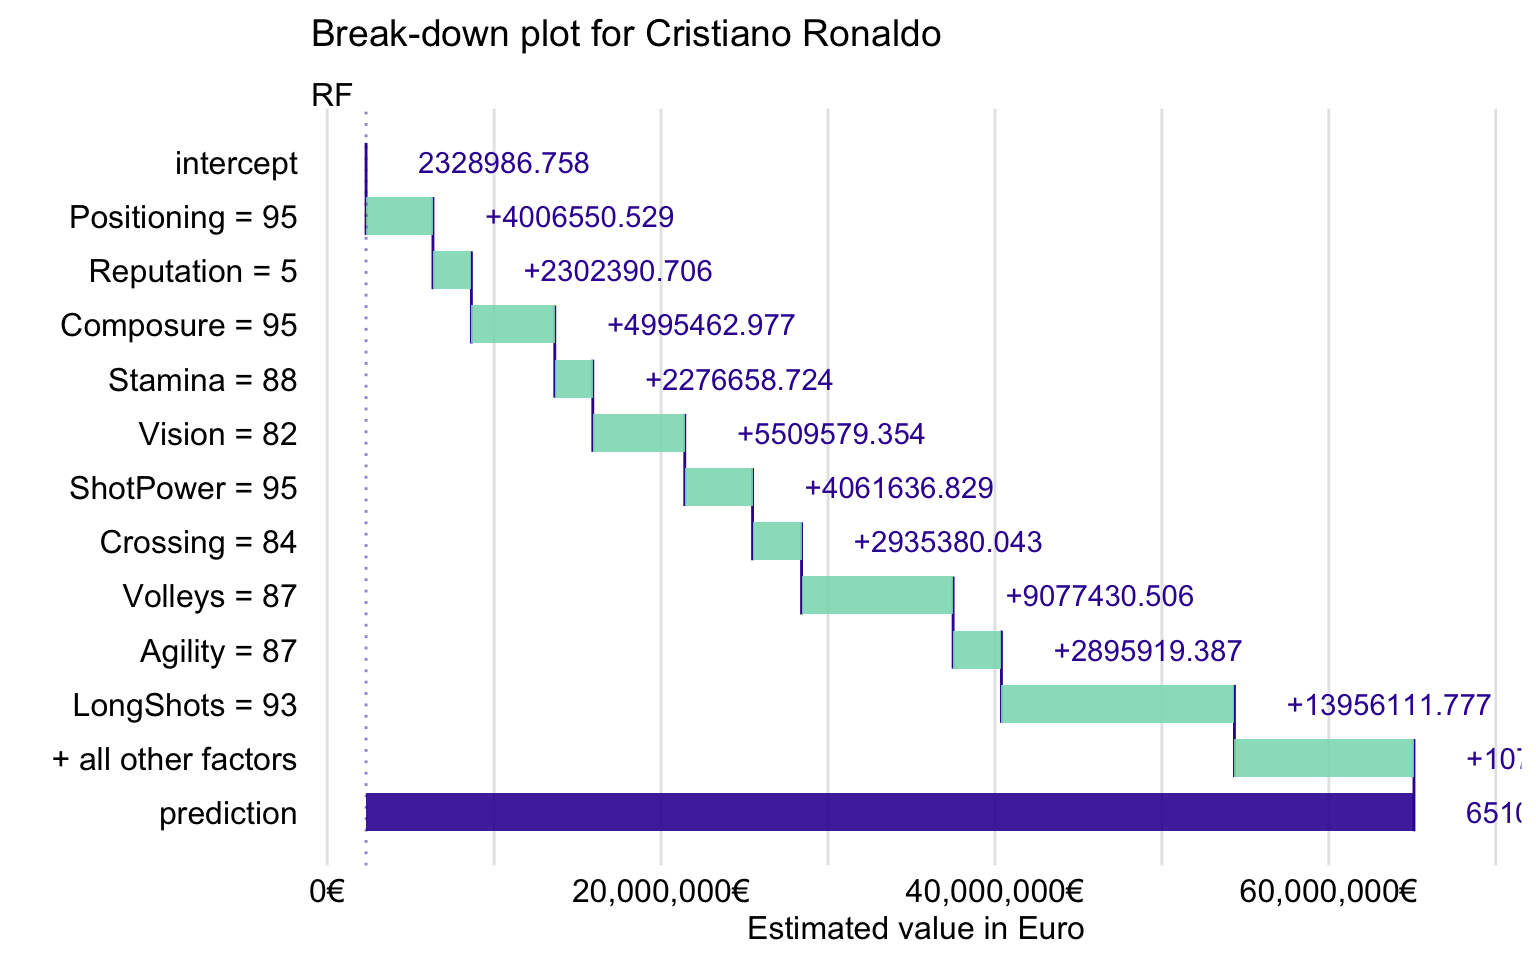 Break-down plot for Cristiano Ronaldo for the random forest model.